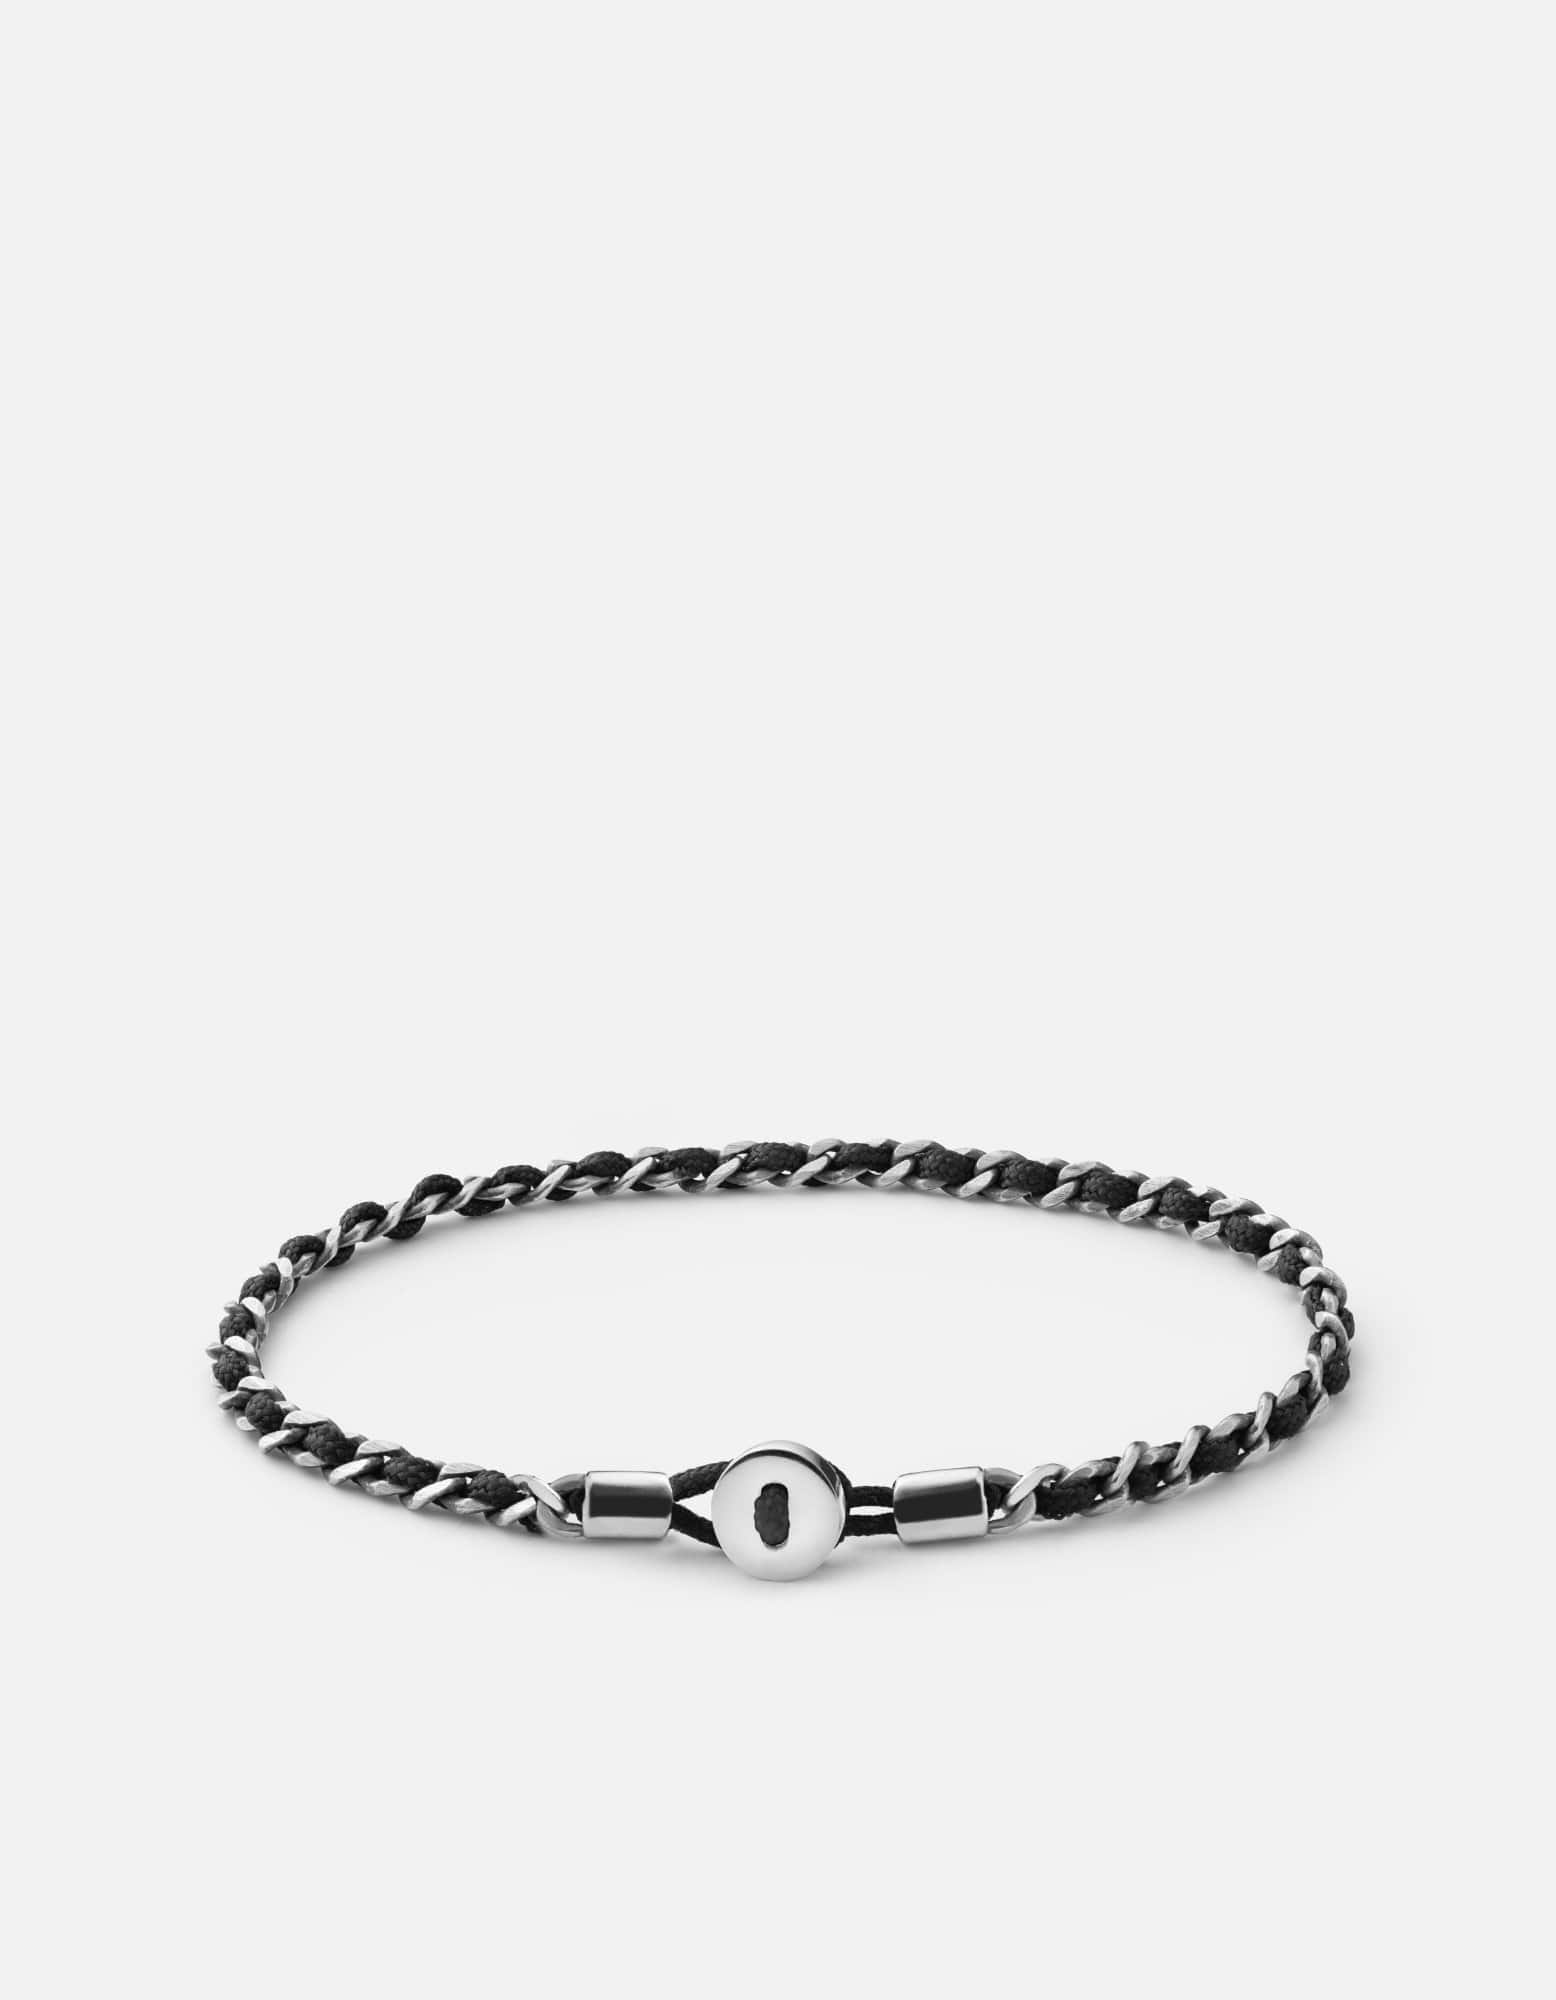 Nexus Rope Bracelet, Sterling Silver, Men's Bracelets